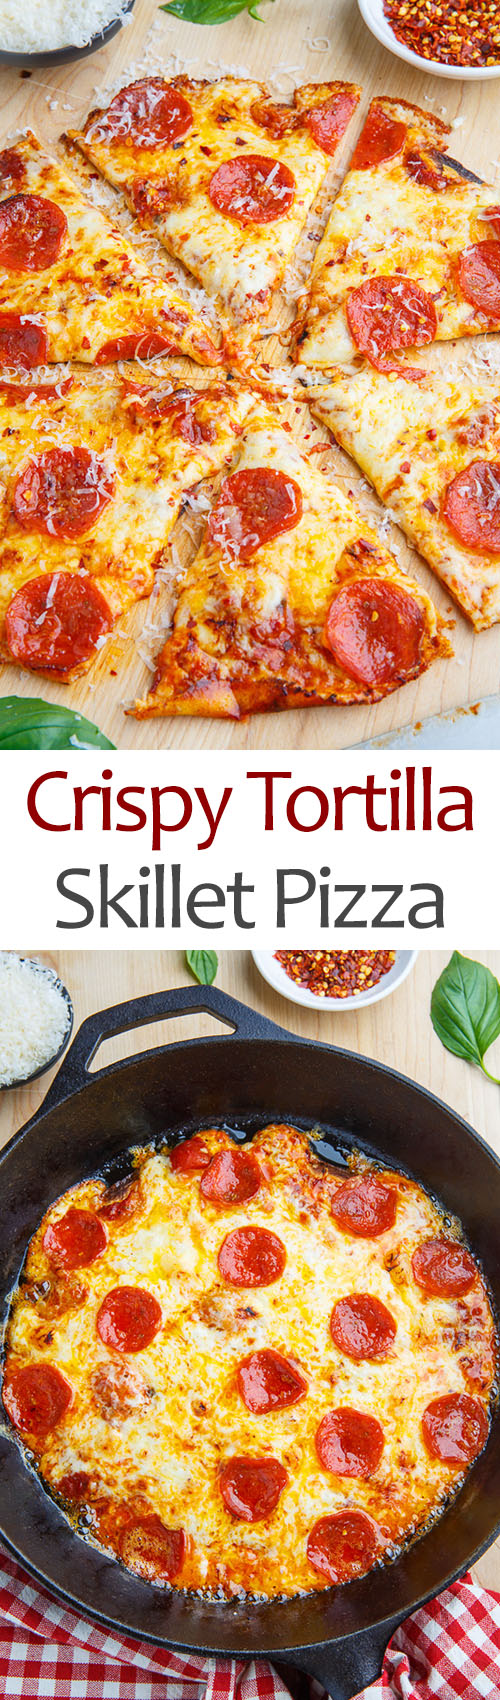 Crispy Tortilla Skillet Pizza